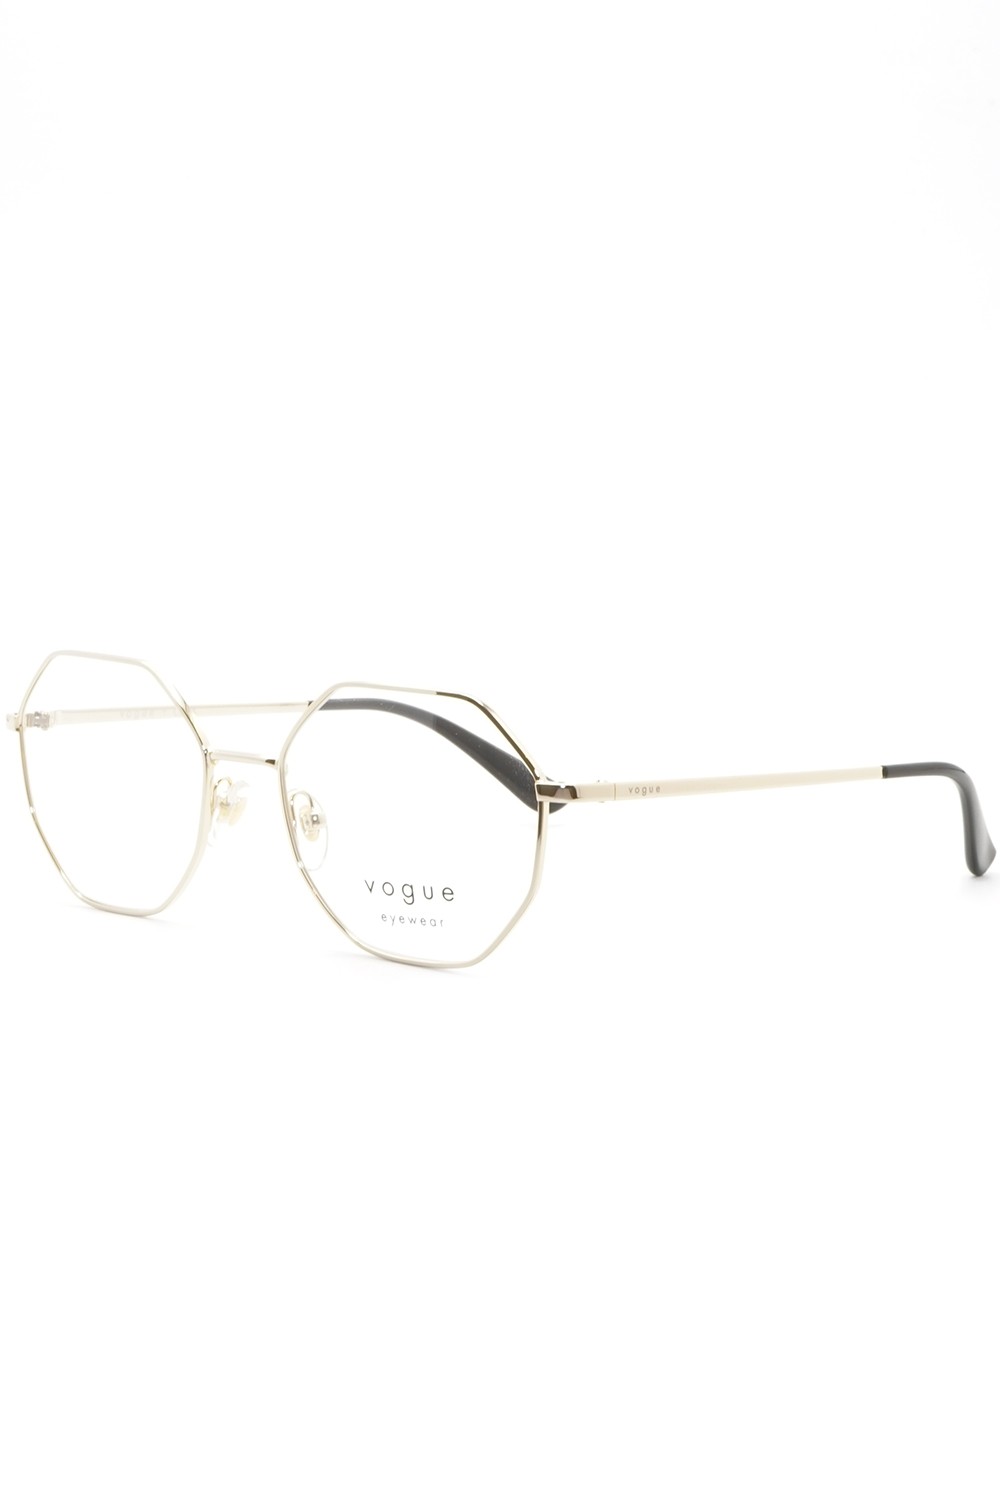 Vogue - Occhiali da vista in metallo esagonali per donna oro - VO4094 848